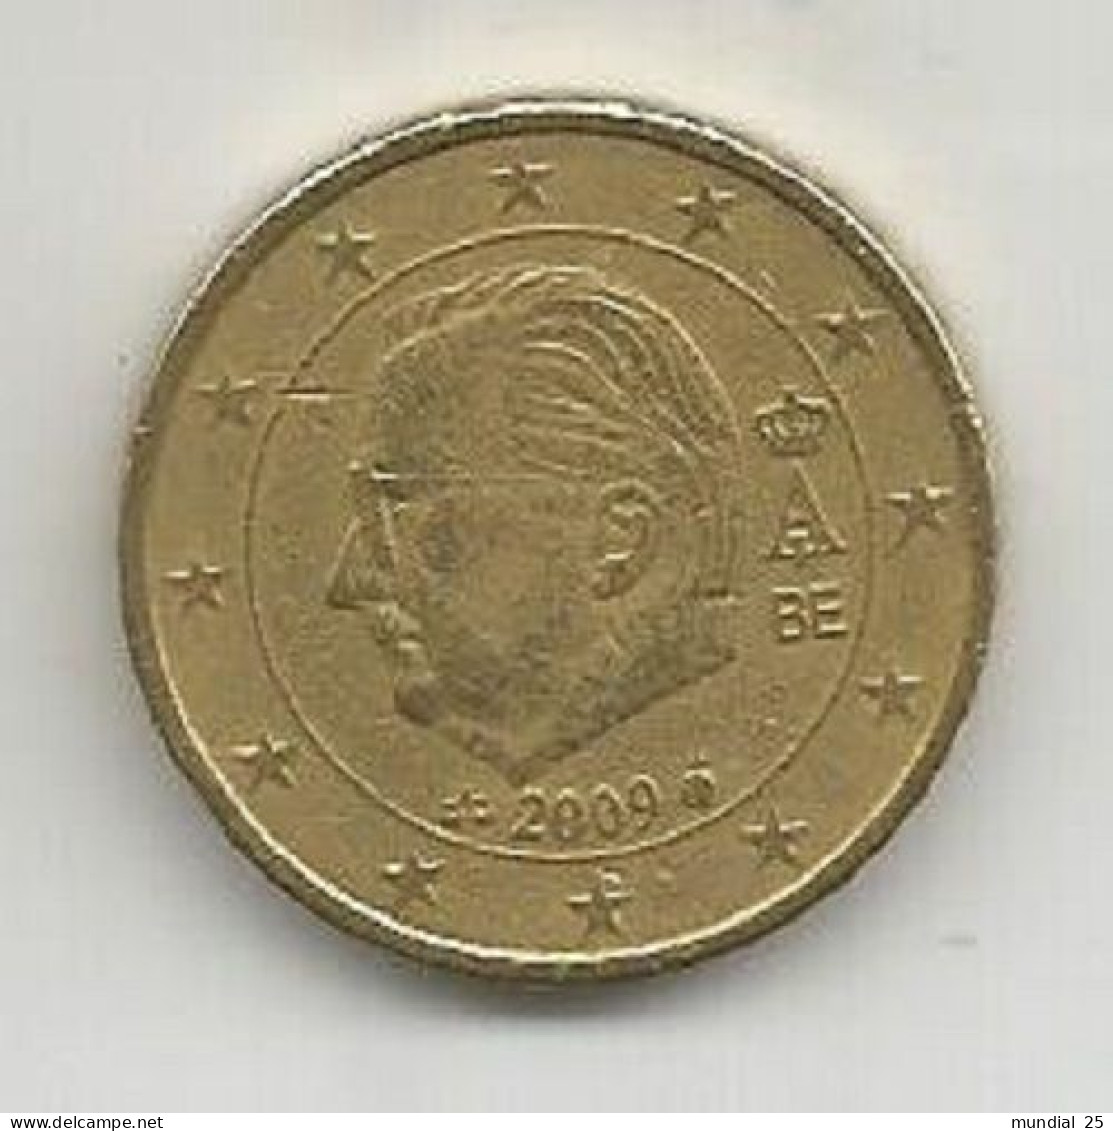 BELGIUM 50 EURO CENT 2009 - Belgium